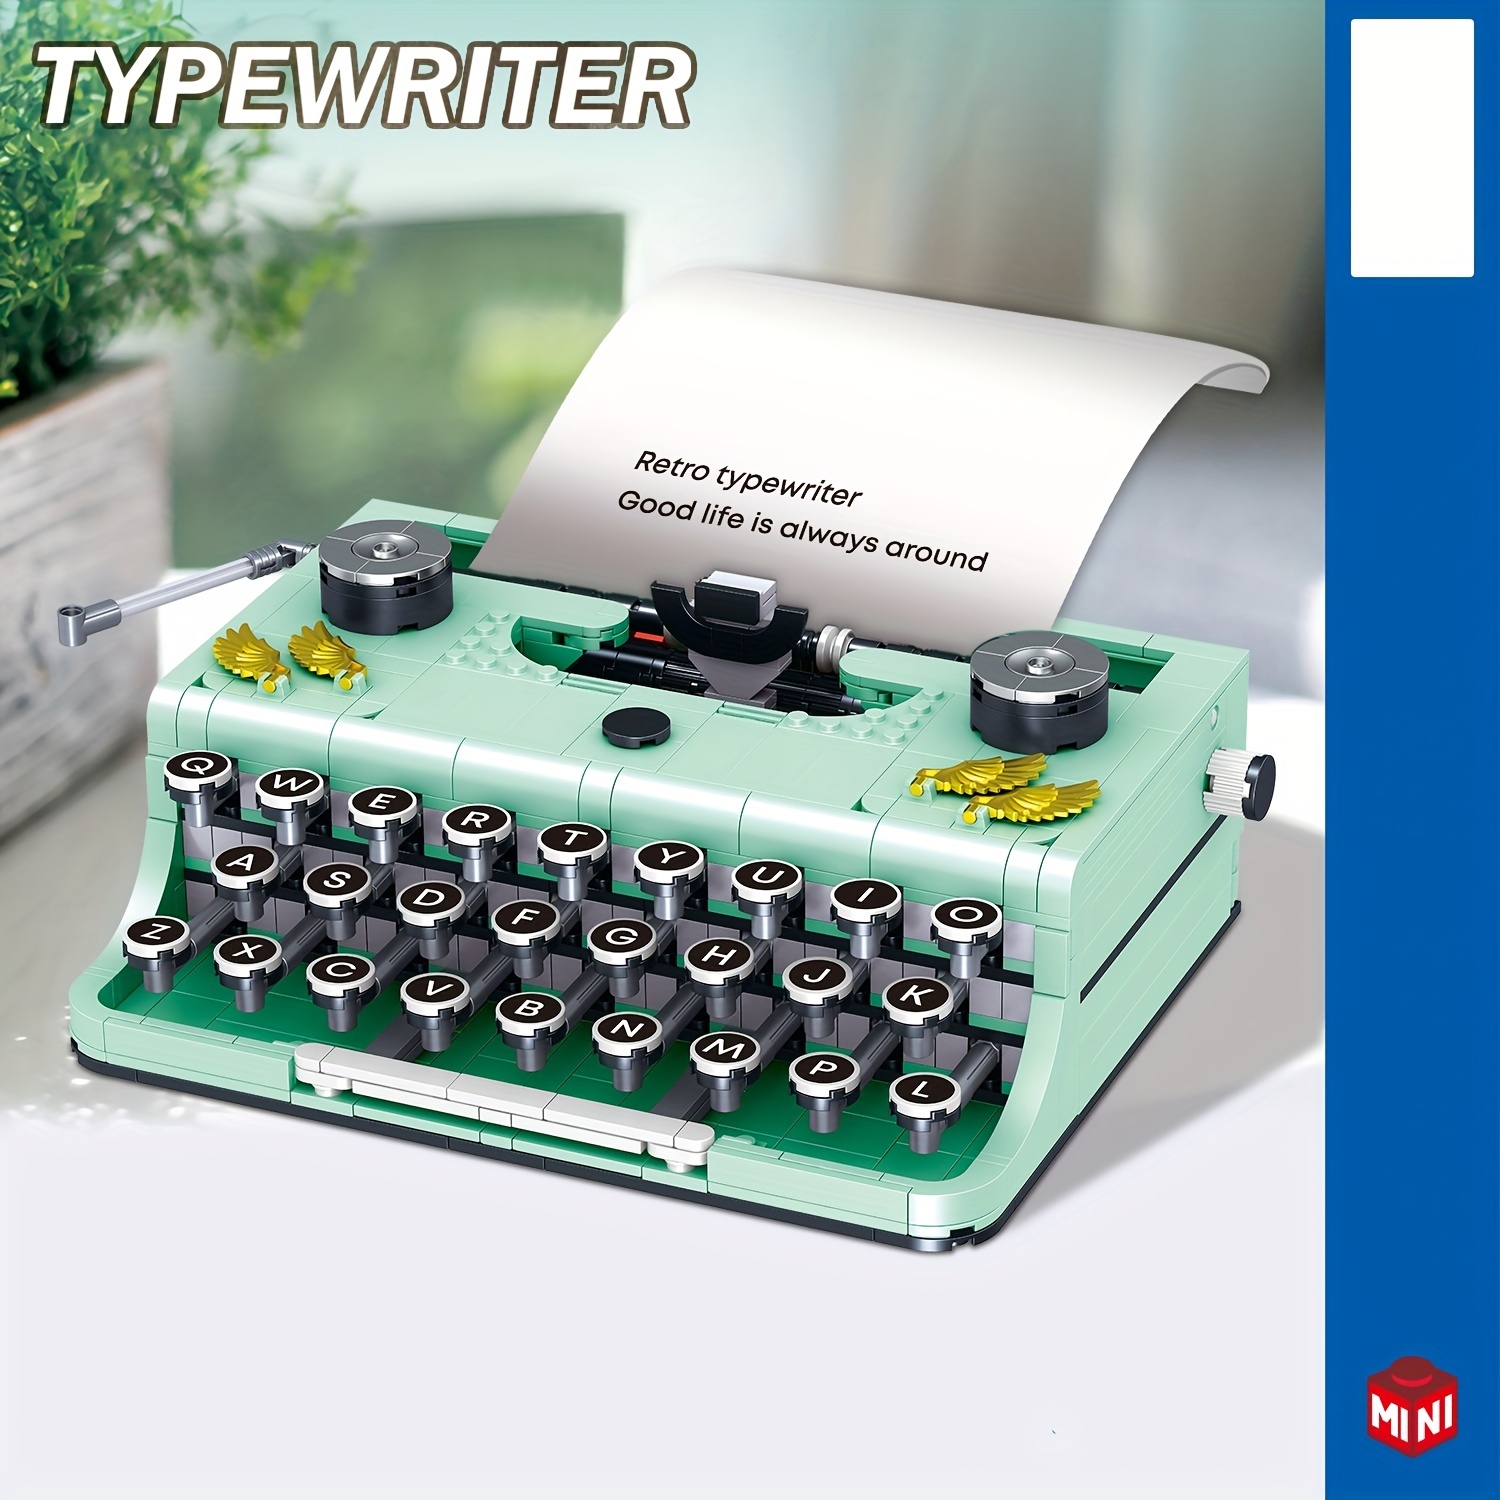 Petite 600 Children's Typewriter : r/typewriters